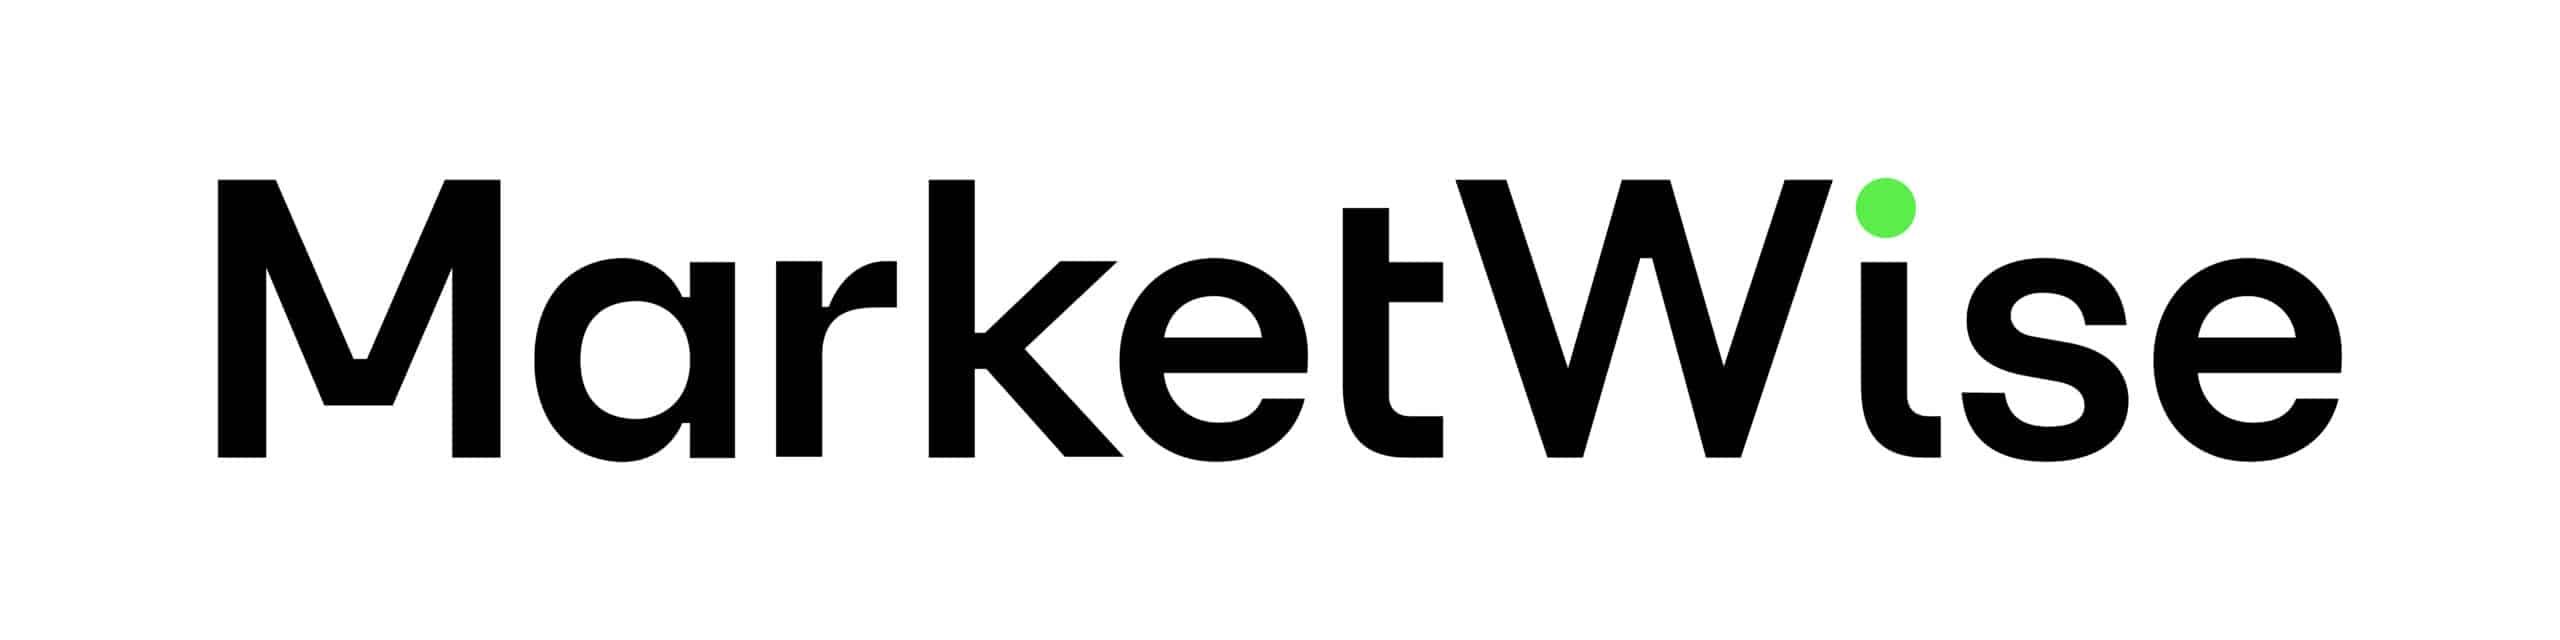 MarketWise logo